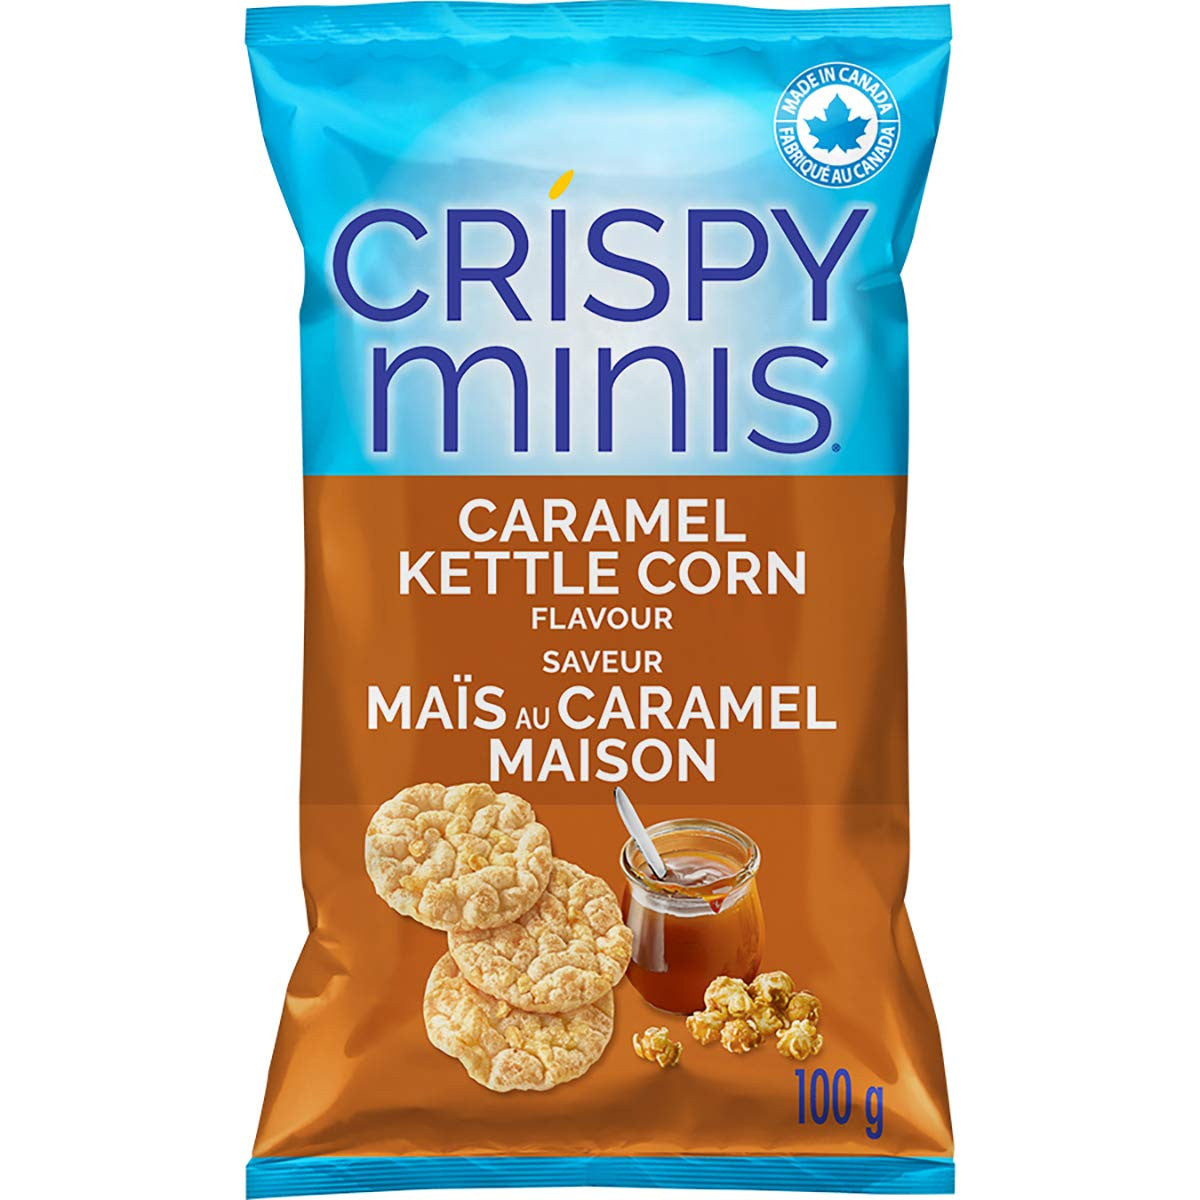 Quaker Crispy Minis Caramel Kettle Corn Rice Chips 100g/3.5 oz. (Pack of 12)